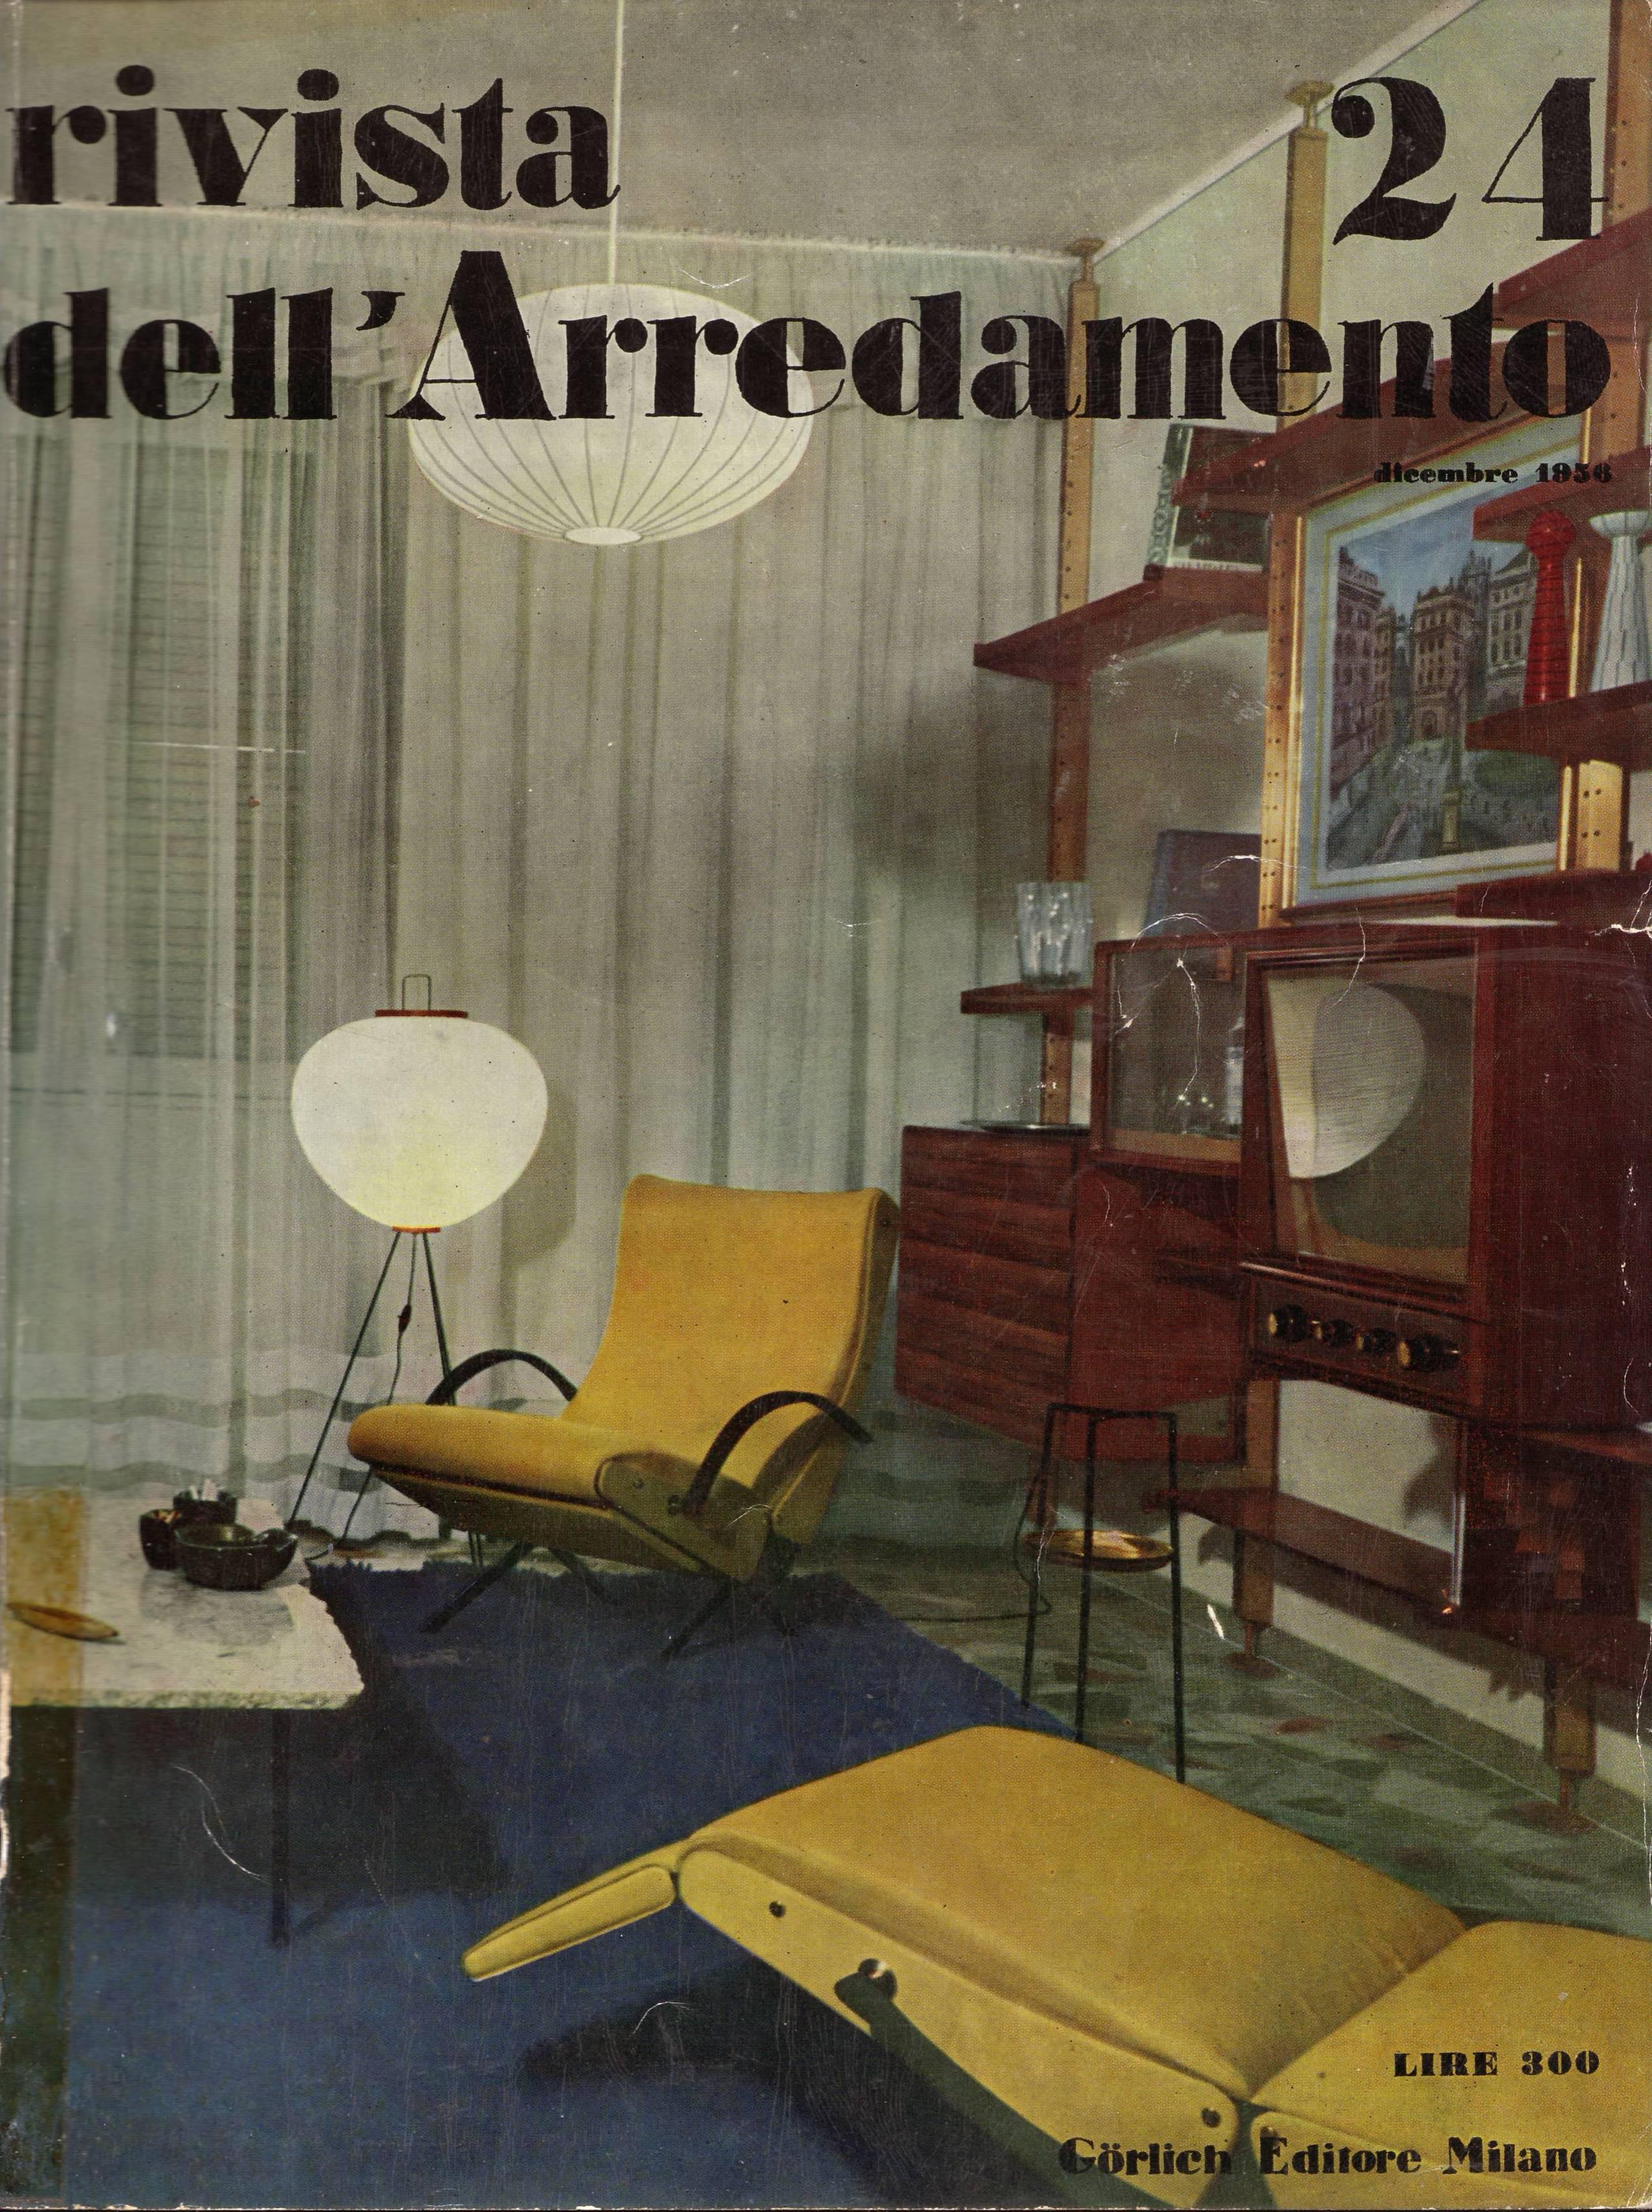 The December 1956 issue of the Italian design journal declared Osvaldo Borsani's new 'P40' variable tilt armchairs 